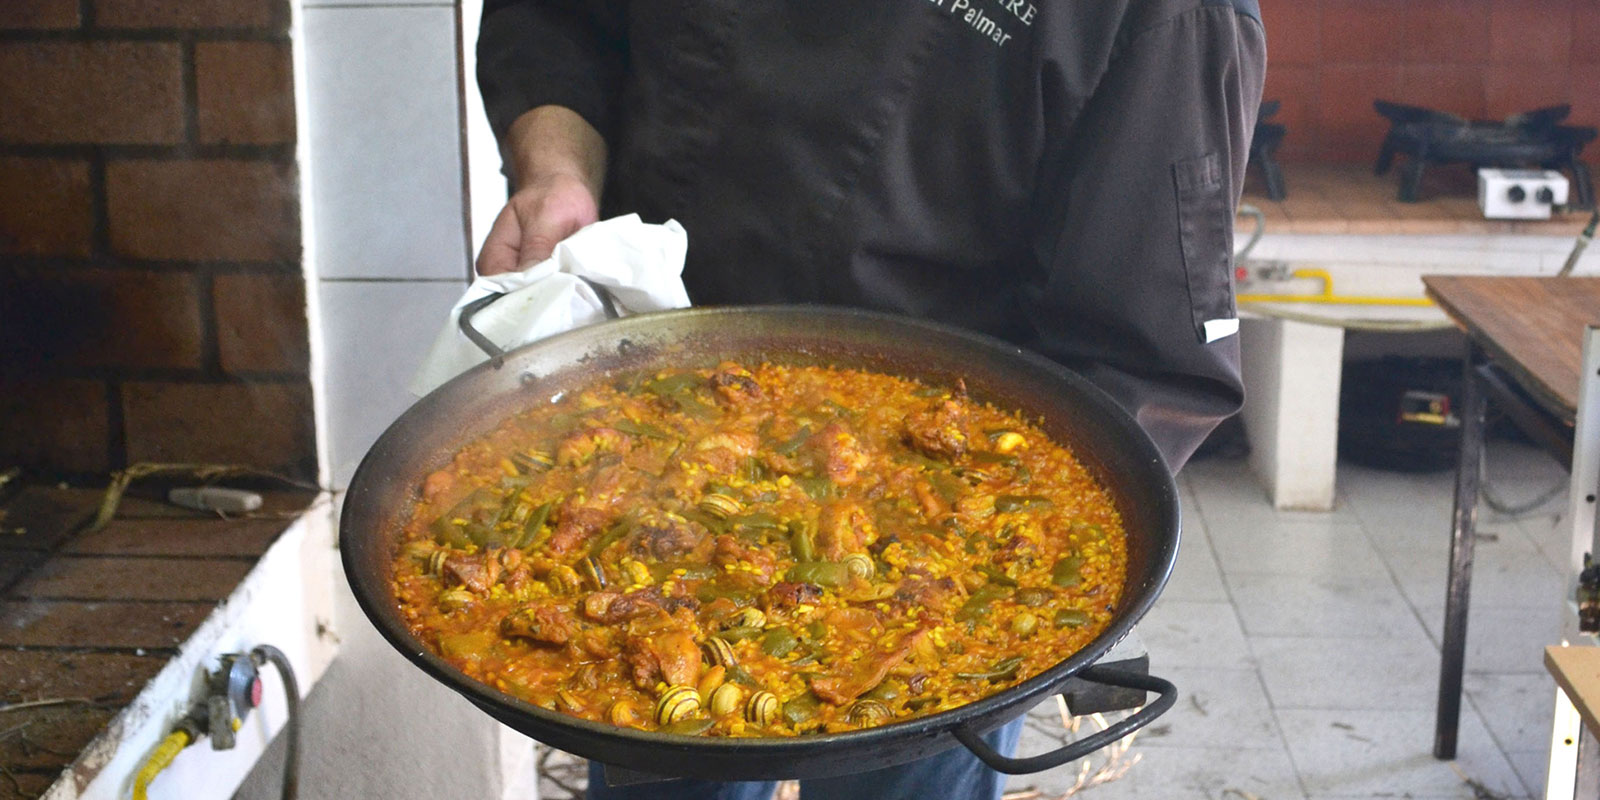 バレンシア地方発祥の伝統的なお米料理、パエリア